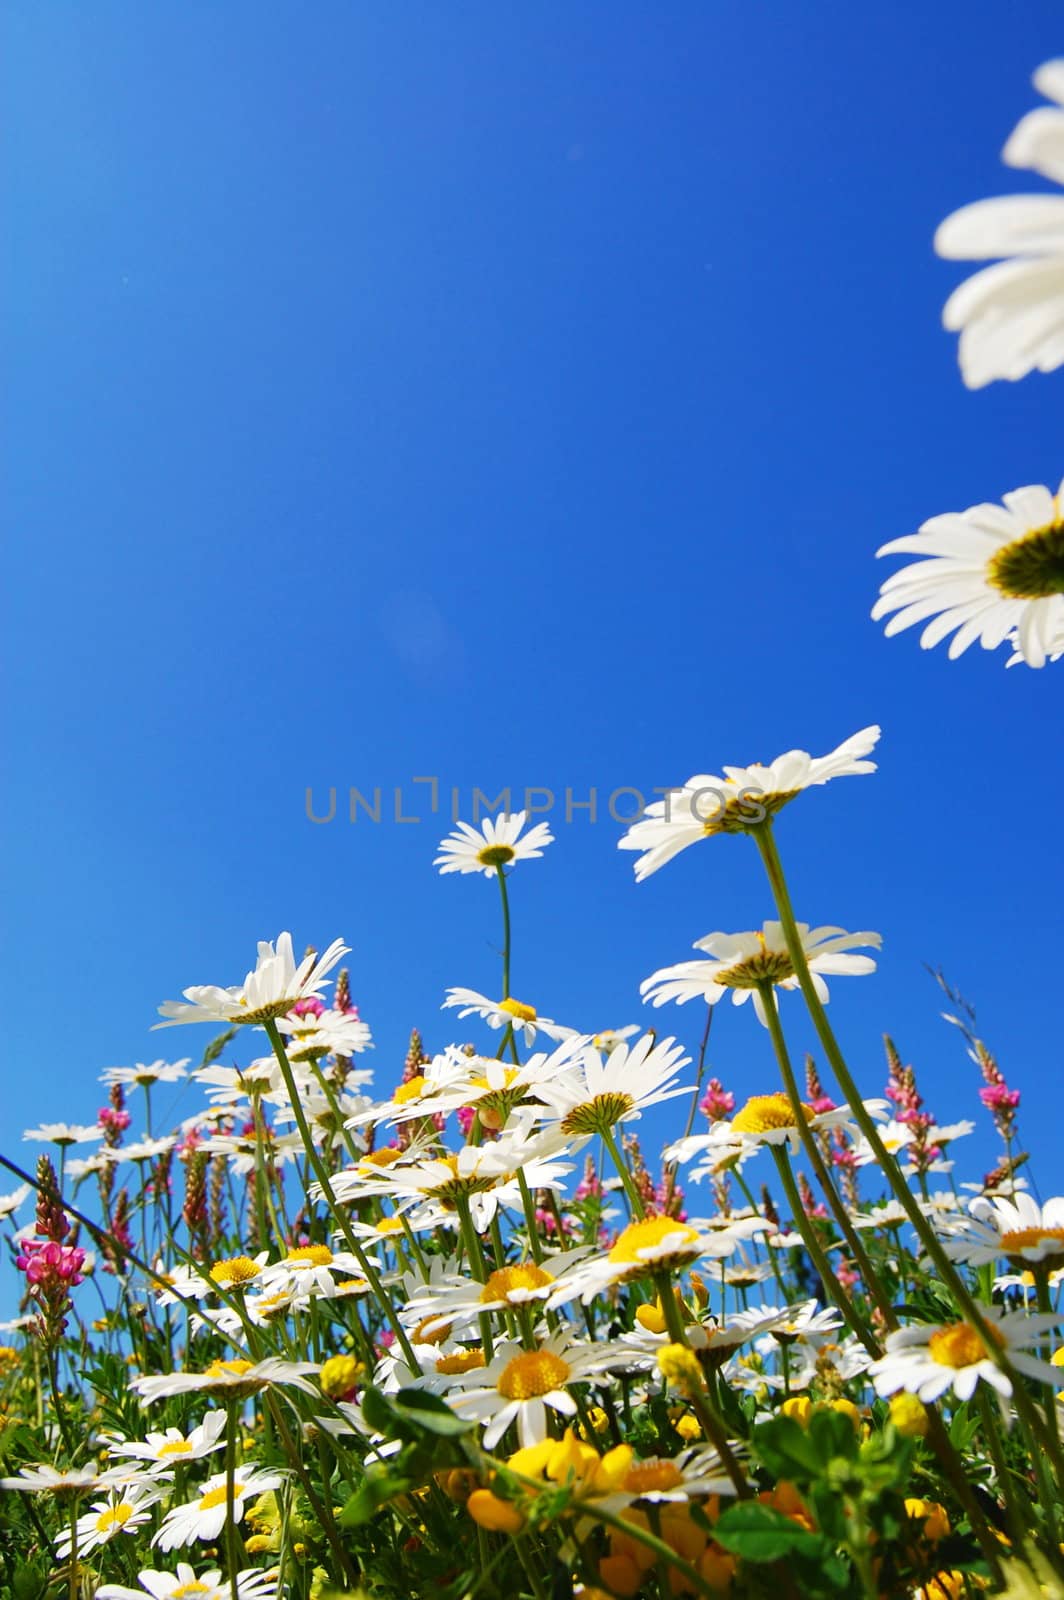 daisy flower in summer by gunnar3000